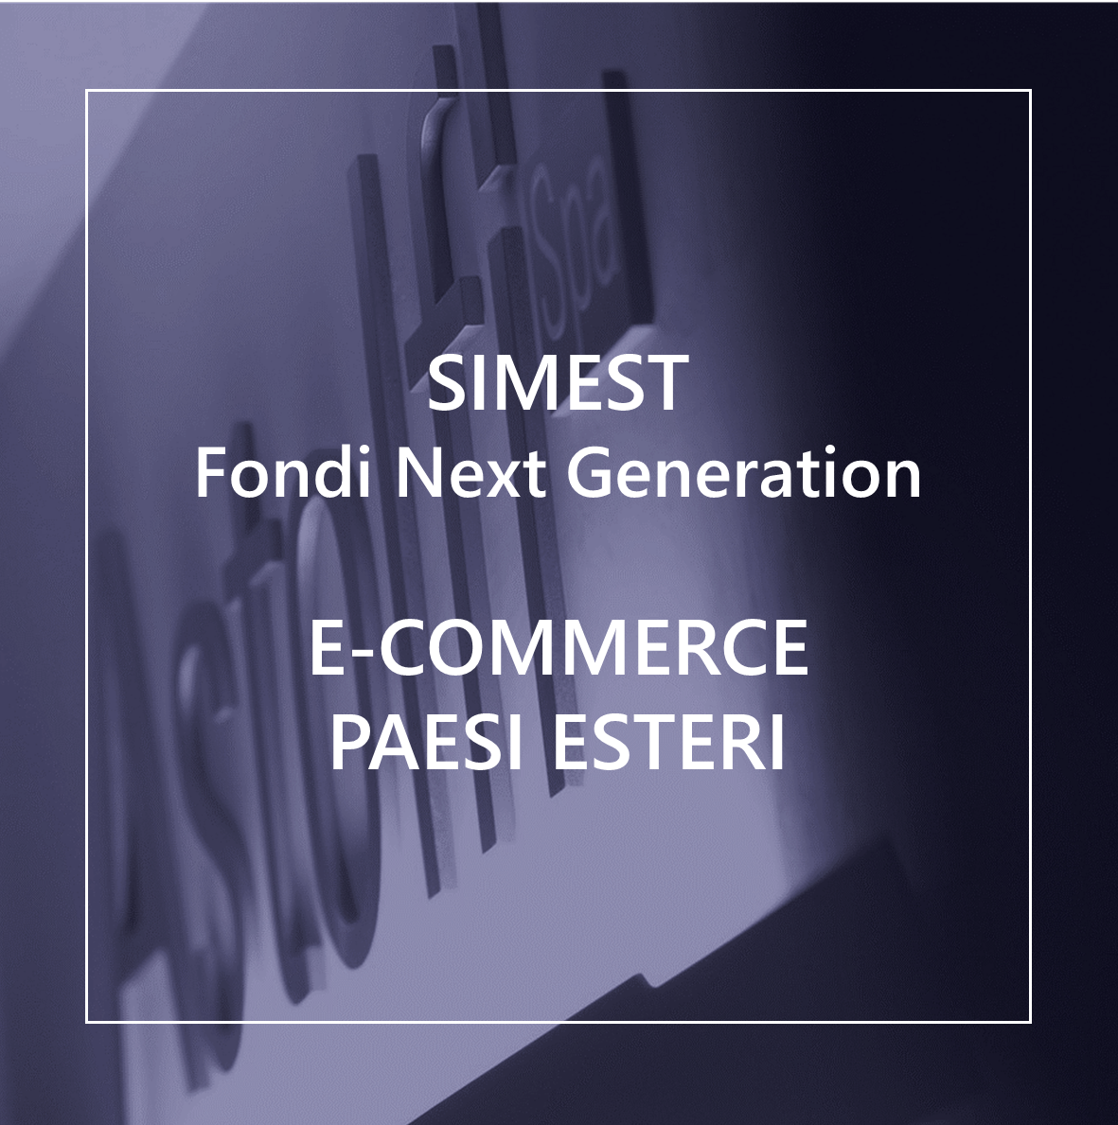 SIMEST Fondi Next Generation - E-COMMERCE PAESI ESTERI